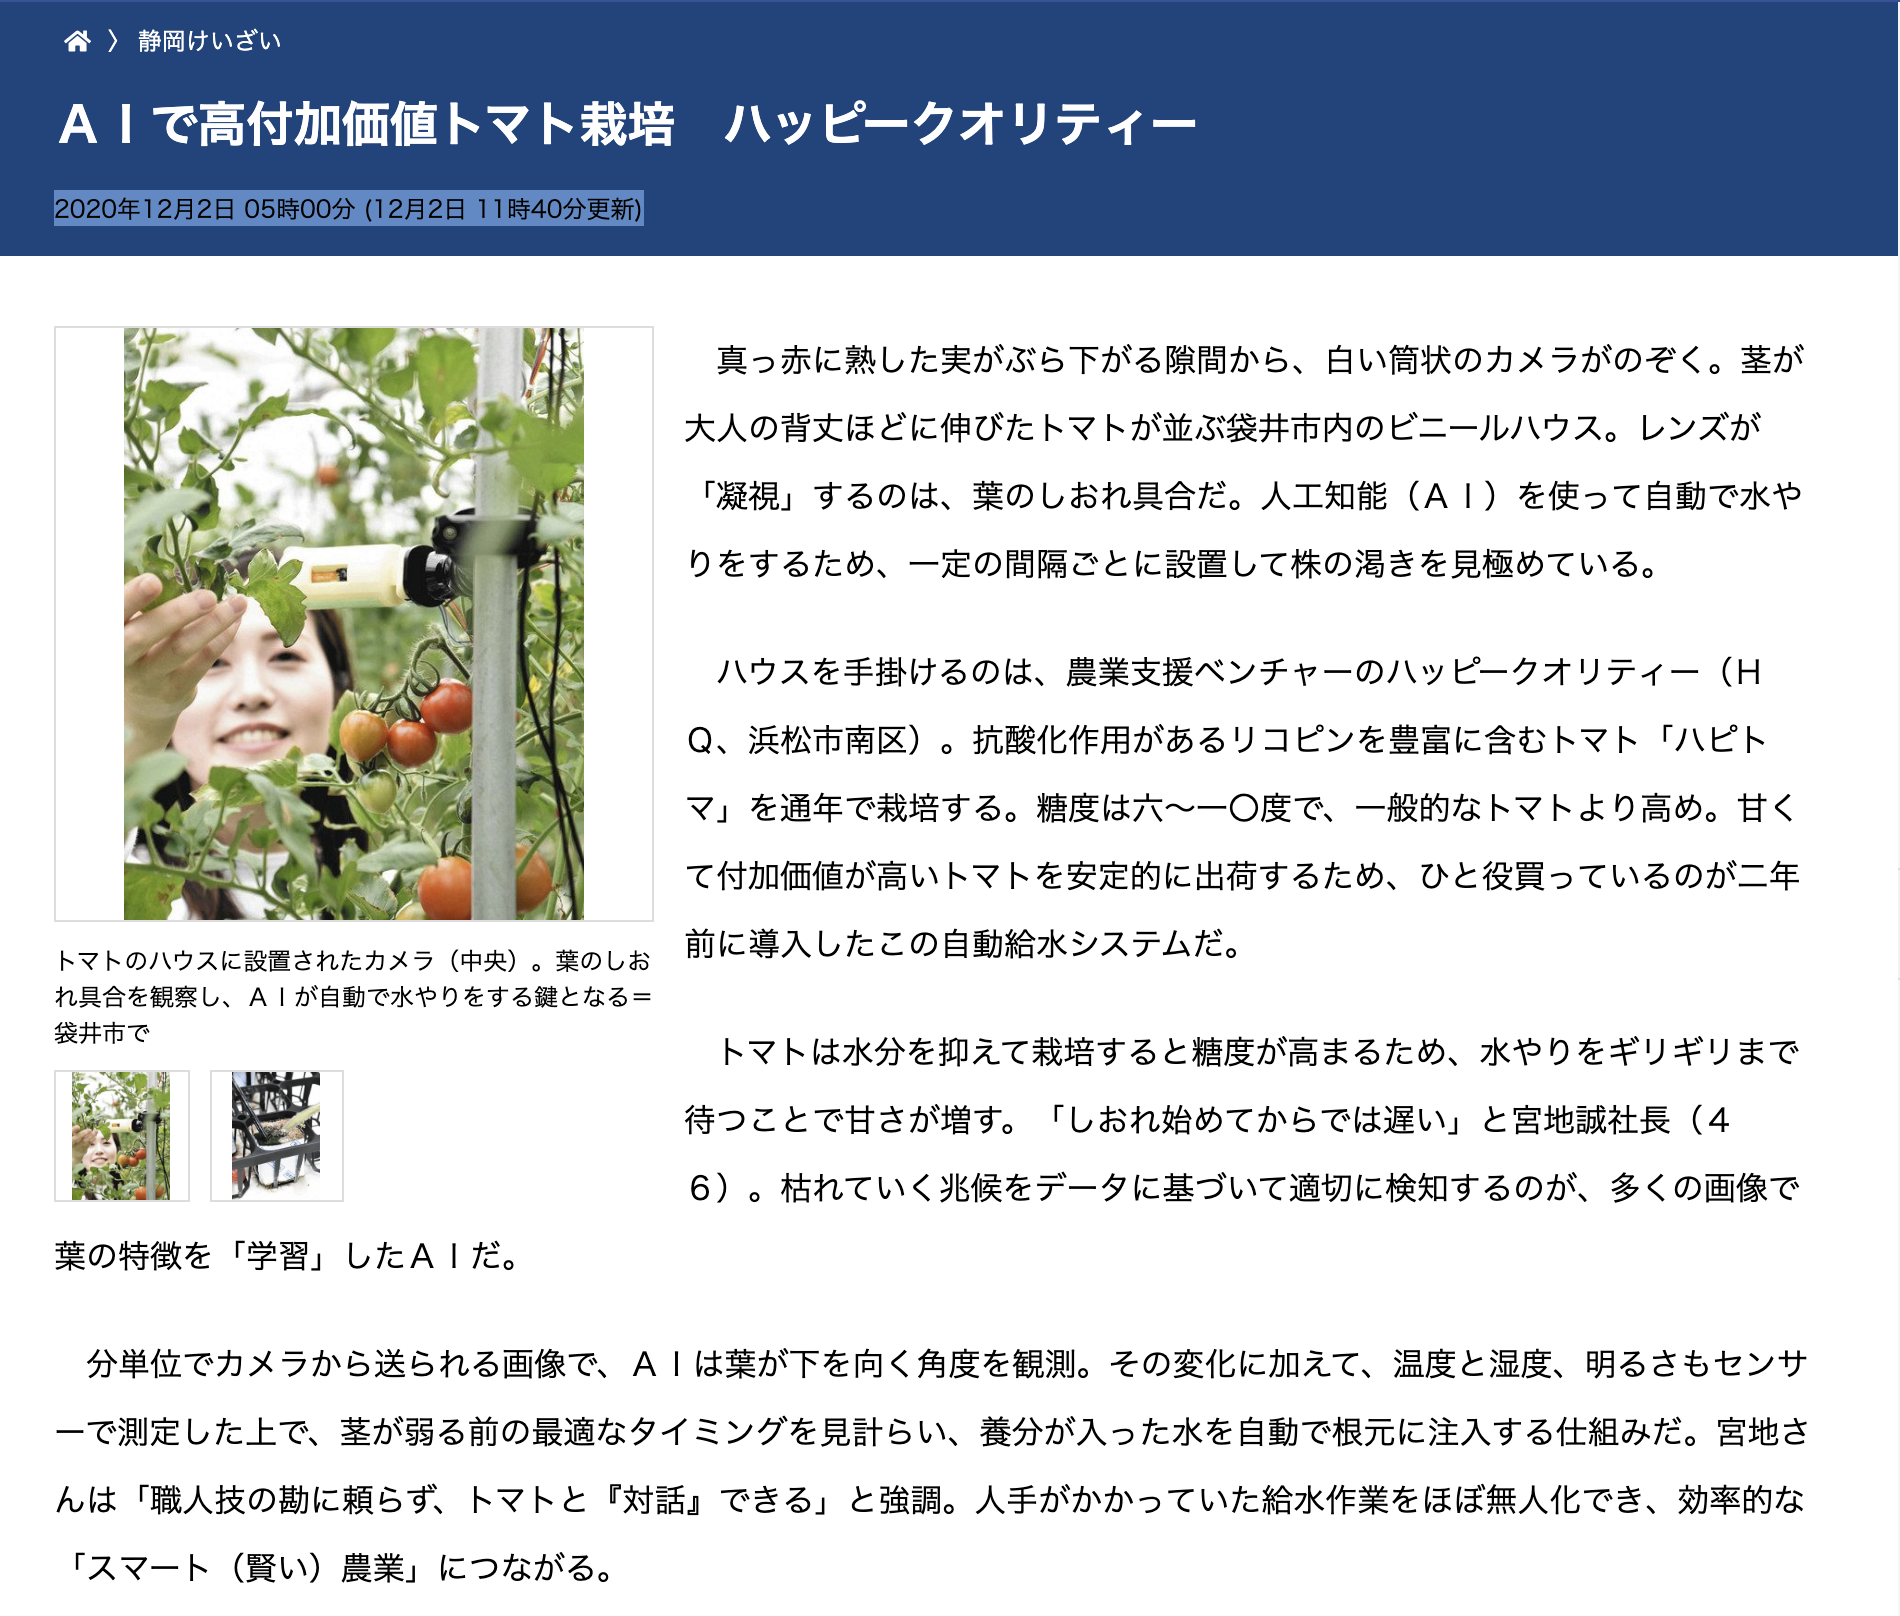 【メディア掲載】中日新聞「AIで高付加価値トマト栽培　ハッピークオリティー」